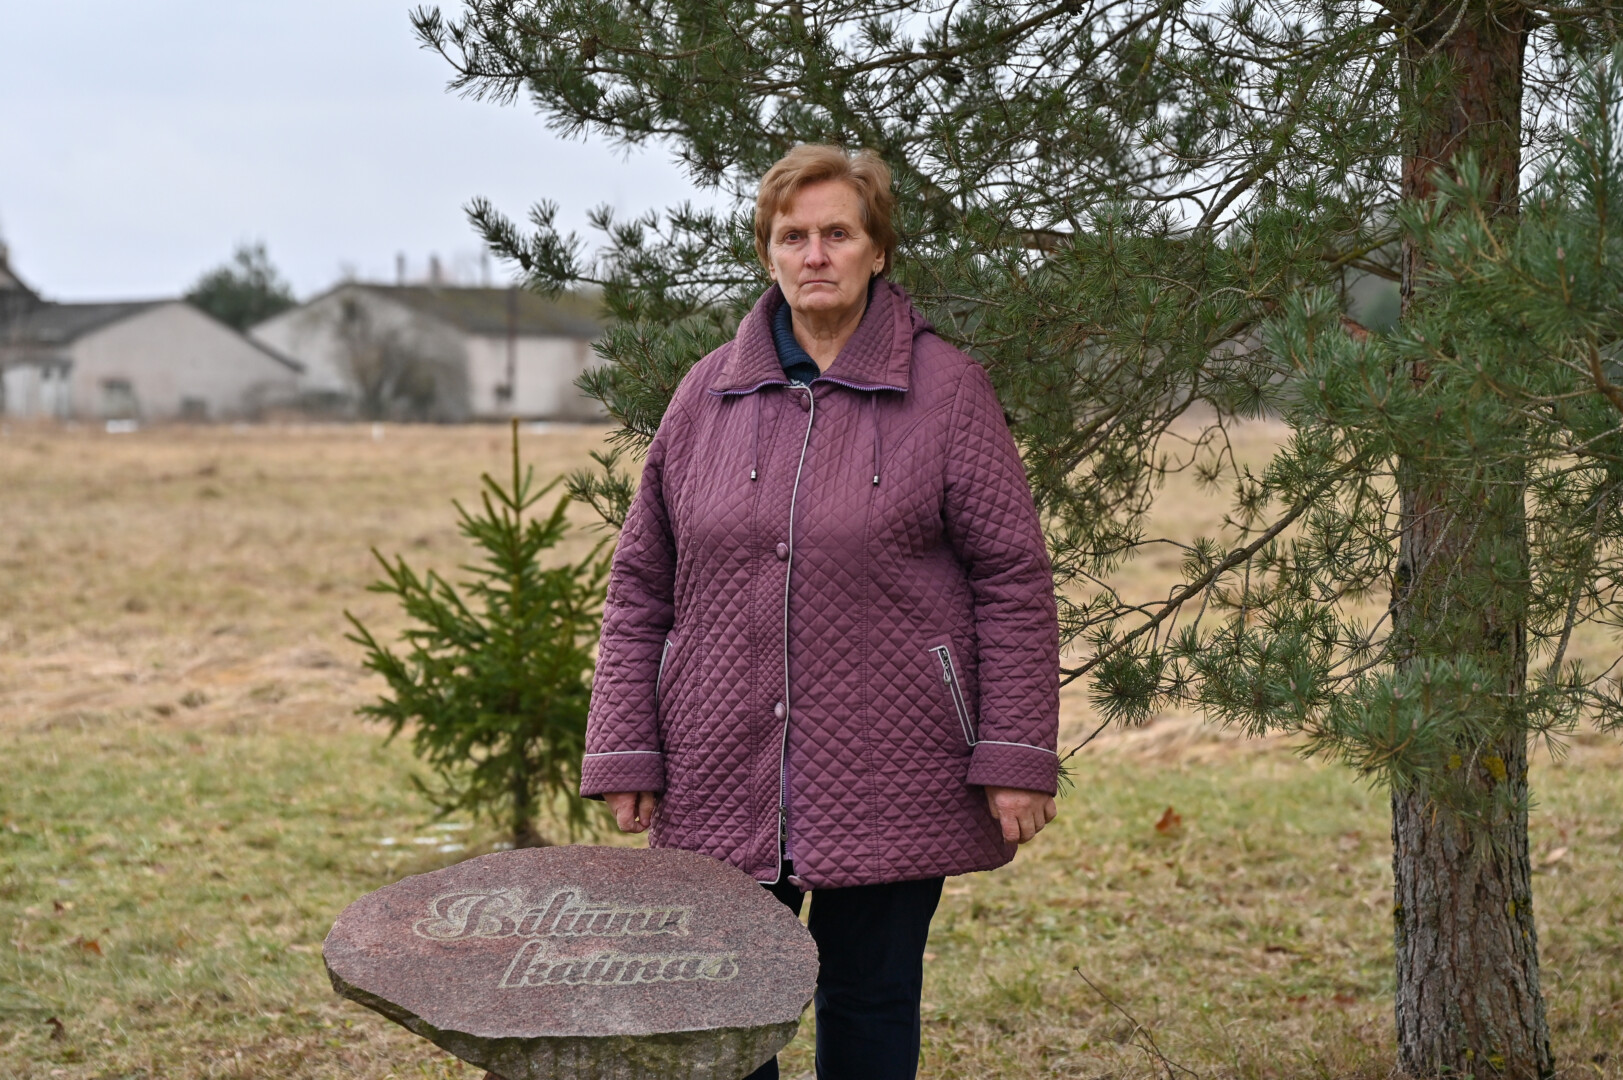 Valentina pasirūpino, kad atminimo ženklu būtų įamžintas jos gimtasis Biliūnų kaimas. G. KARTANO nuotr.